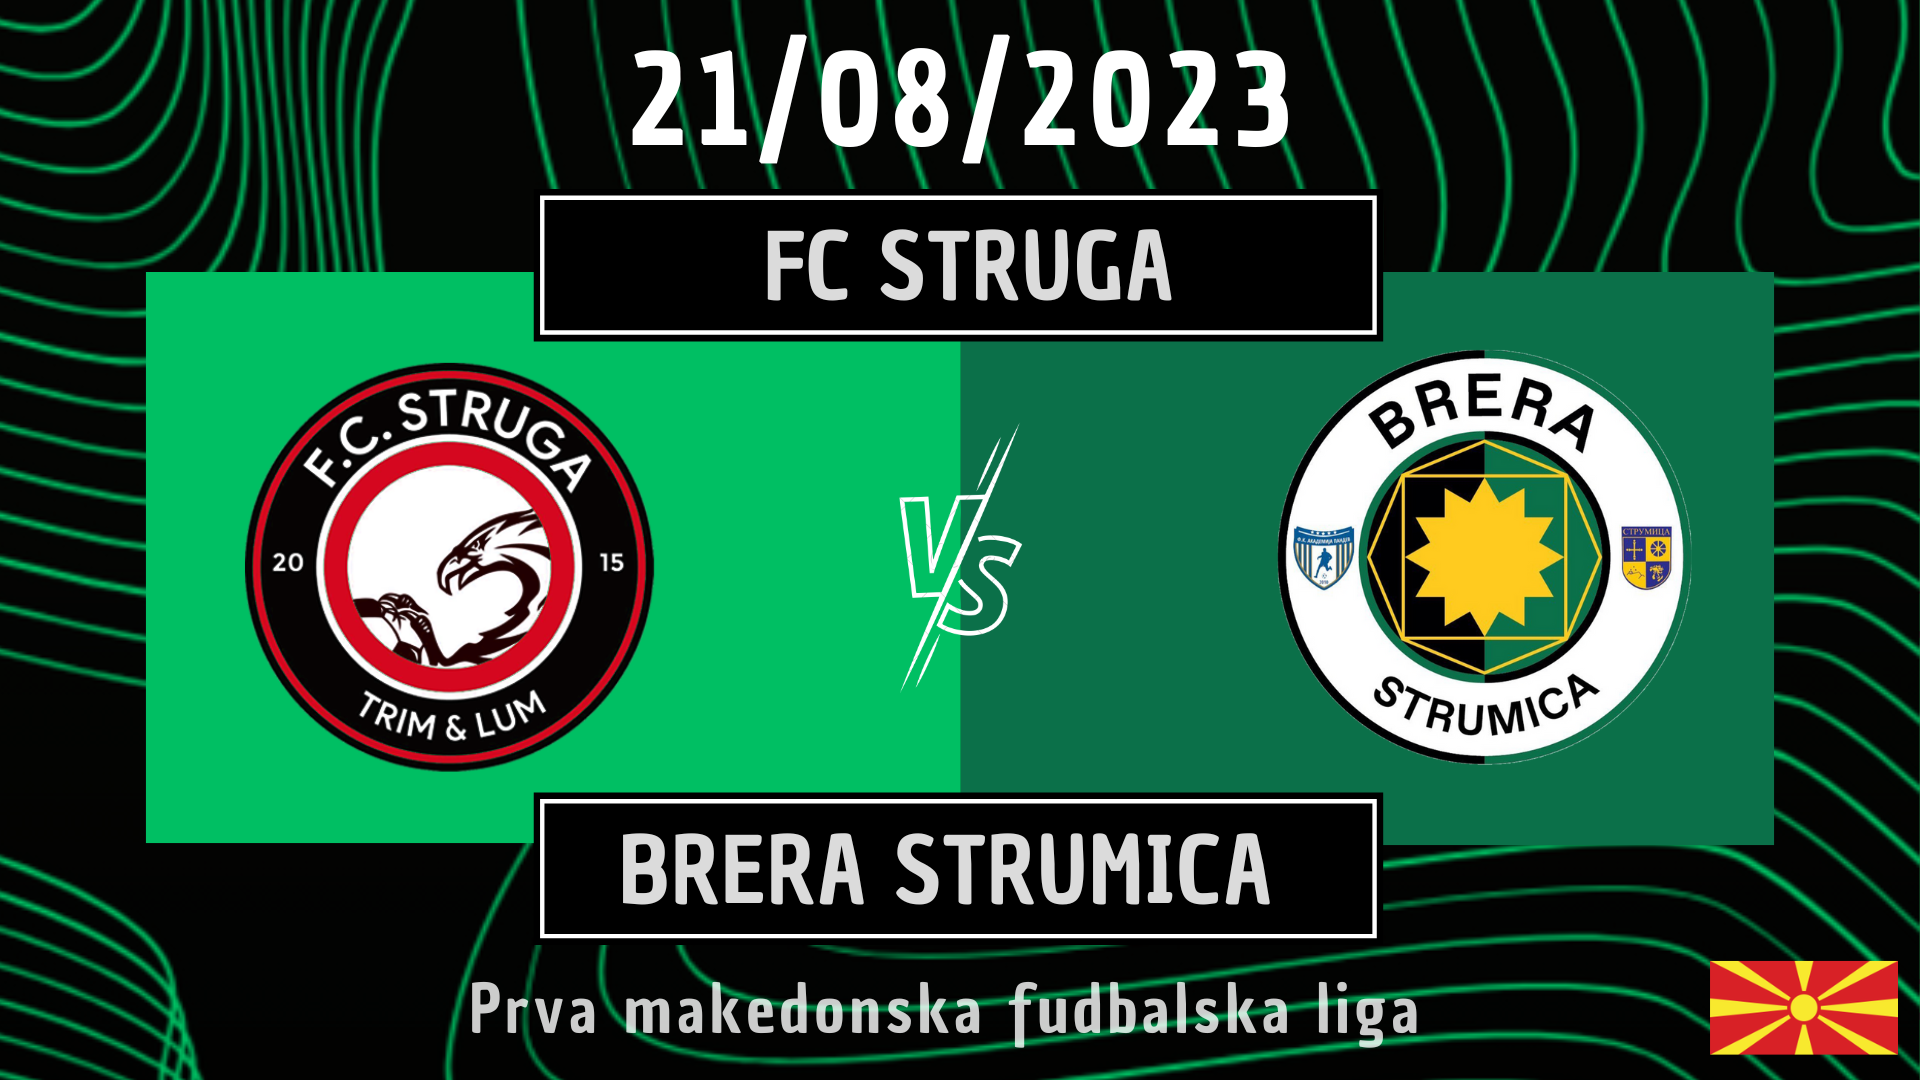 Struga-Brera Strumica 1-2 | goal e highlights I Prva Makedonska Fudbalska Liga 23/24 - Giornata 3